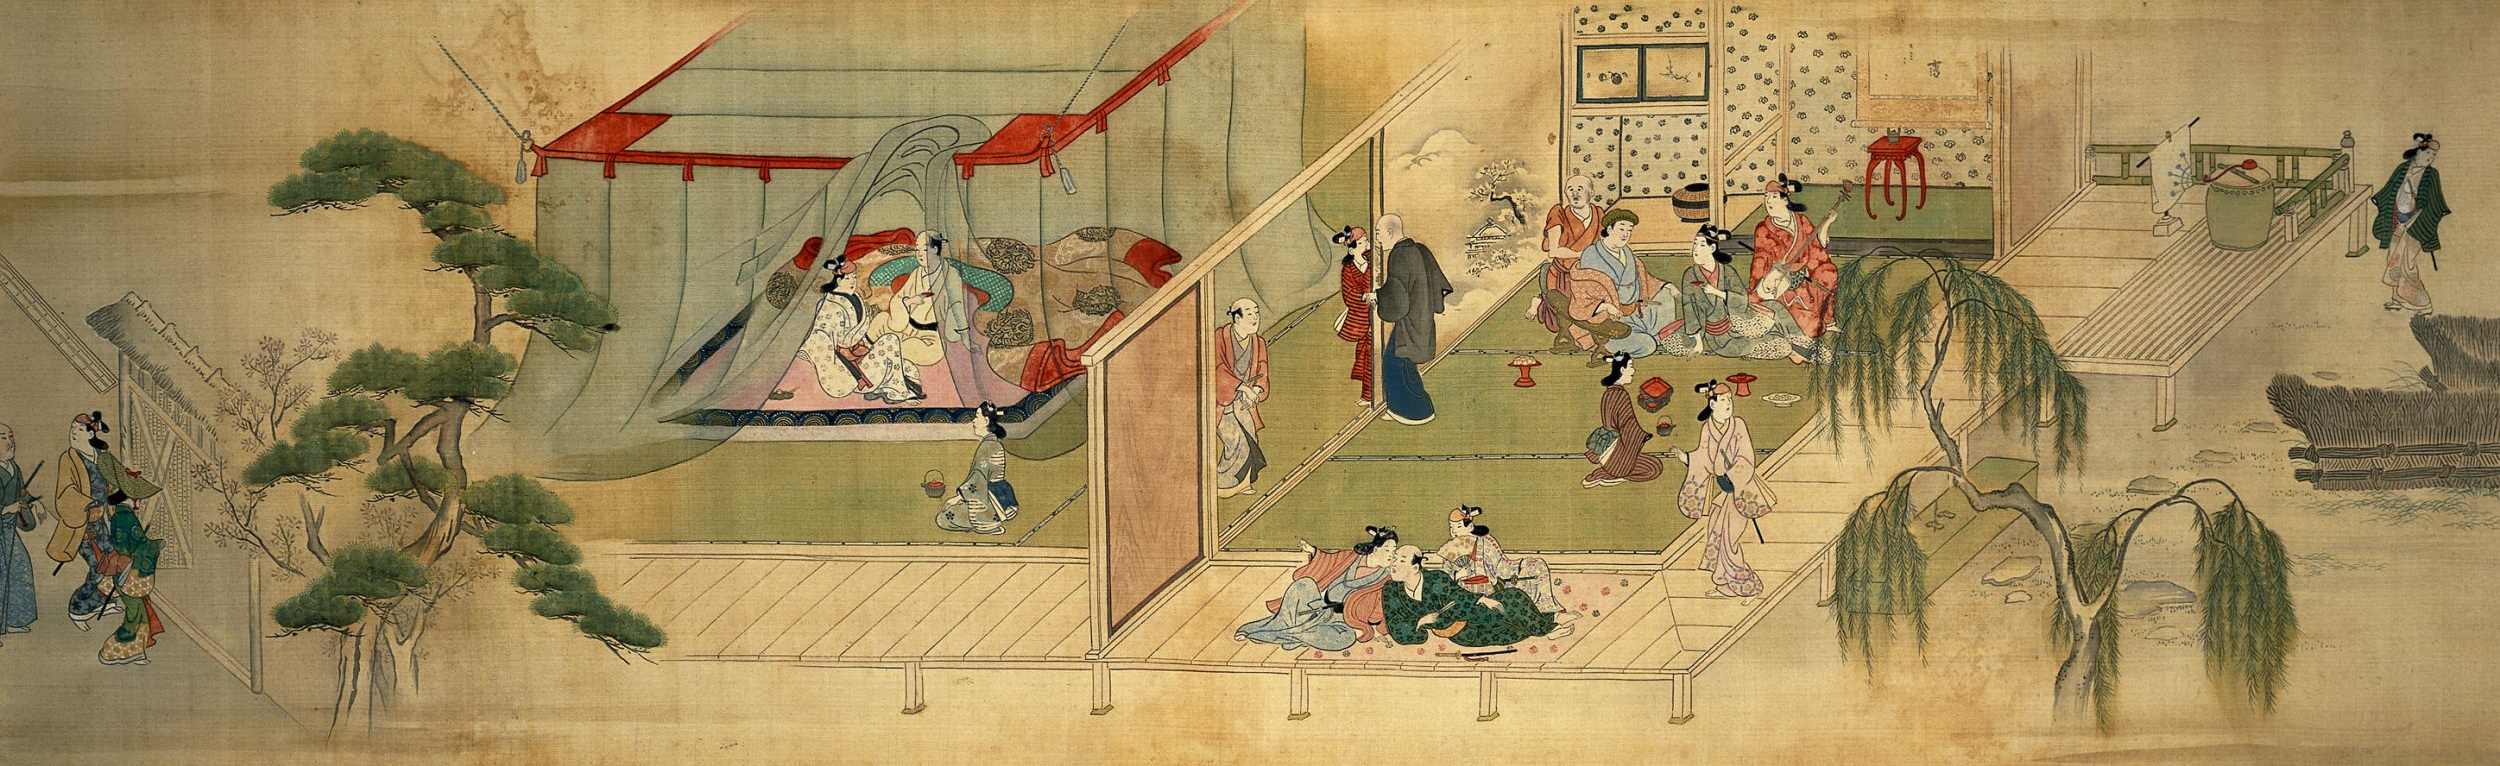 Моронобу Хисикава. "Театр. Чайхана, слева два самурая, входящие в ворота, куртизанка с клиентом под москитной сеткой, справа гостиный зал". 1685.